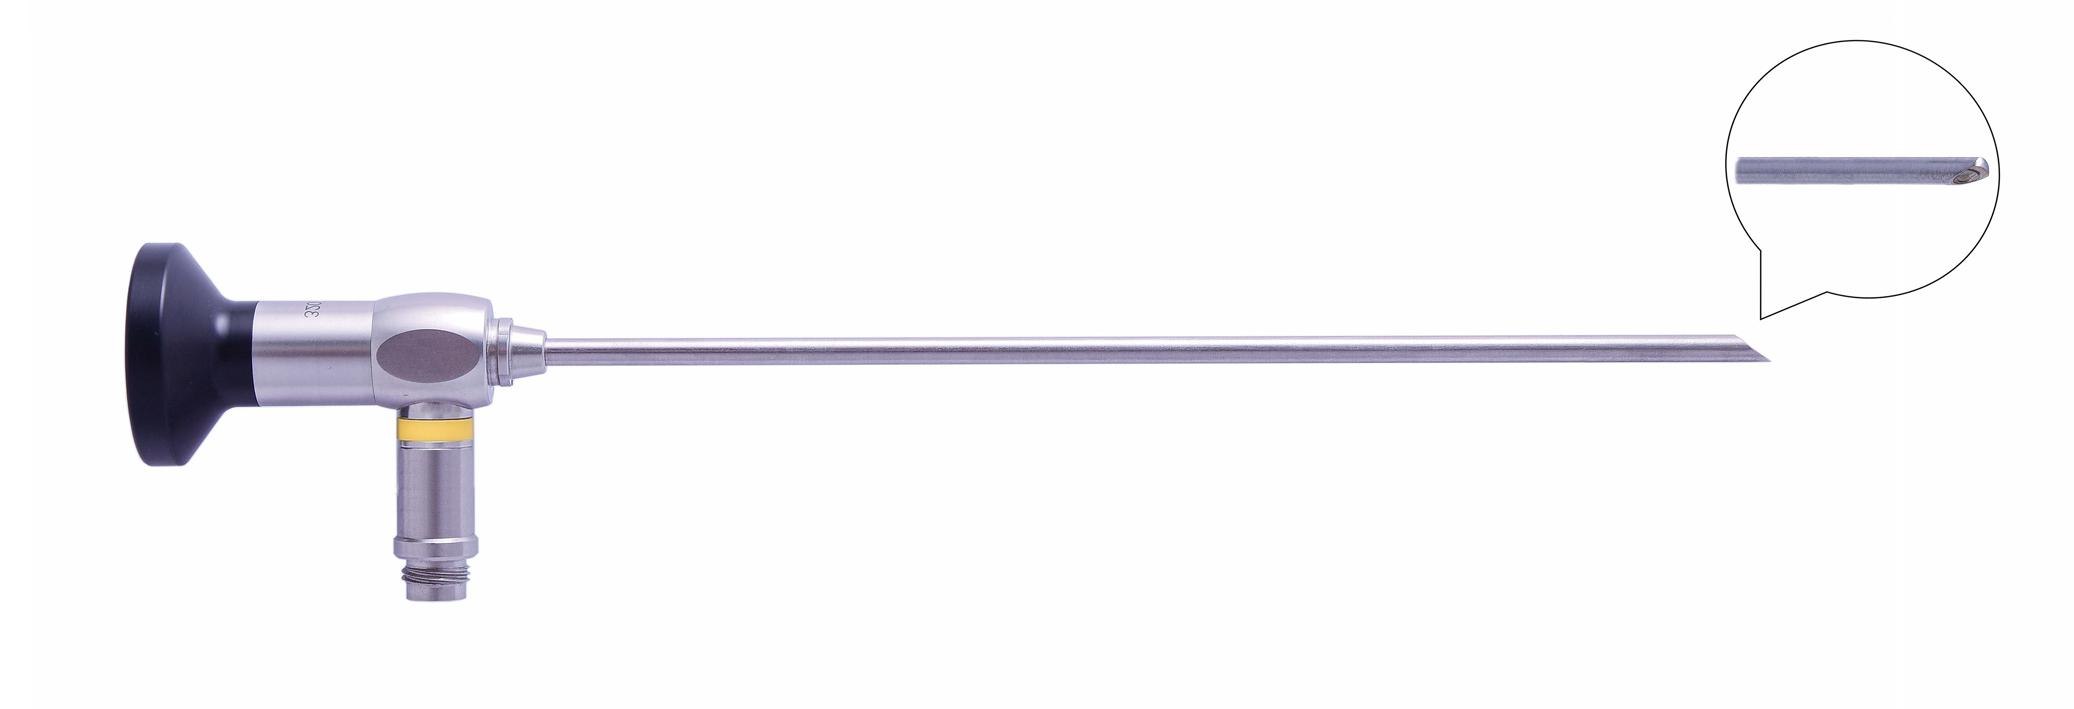 Трубка оптическая (артроскопическая, риноскопическая) ТОАР-007 диам. 2.7 мм, с углом наблюдения 70 гр.